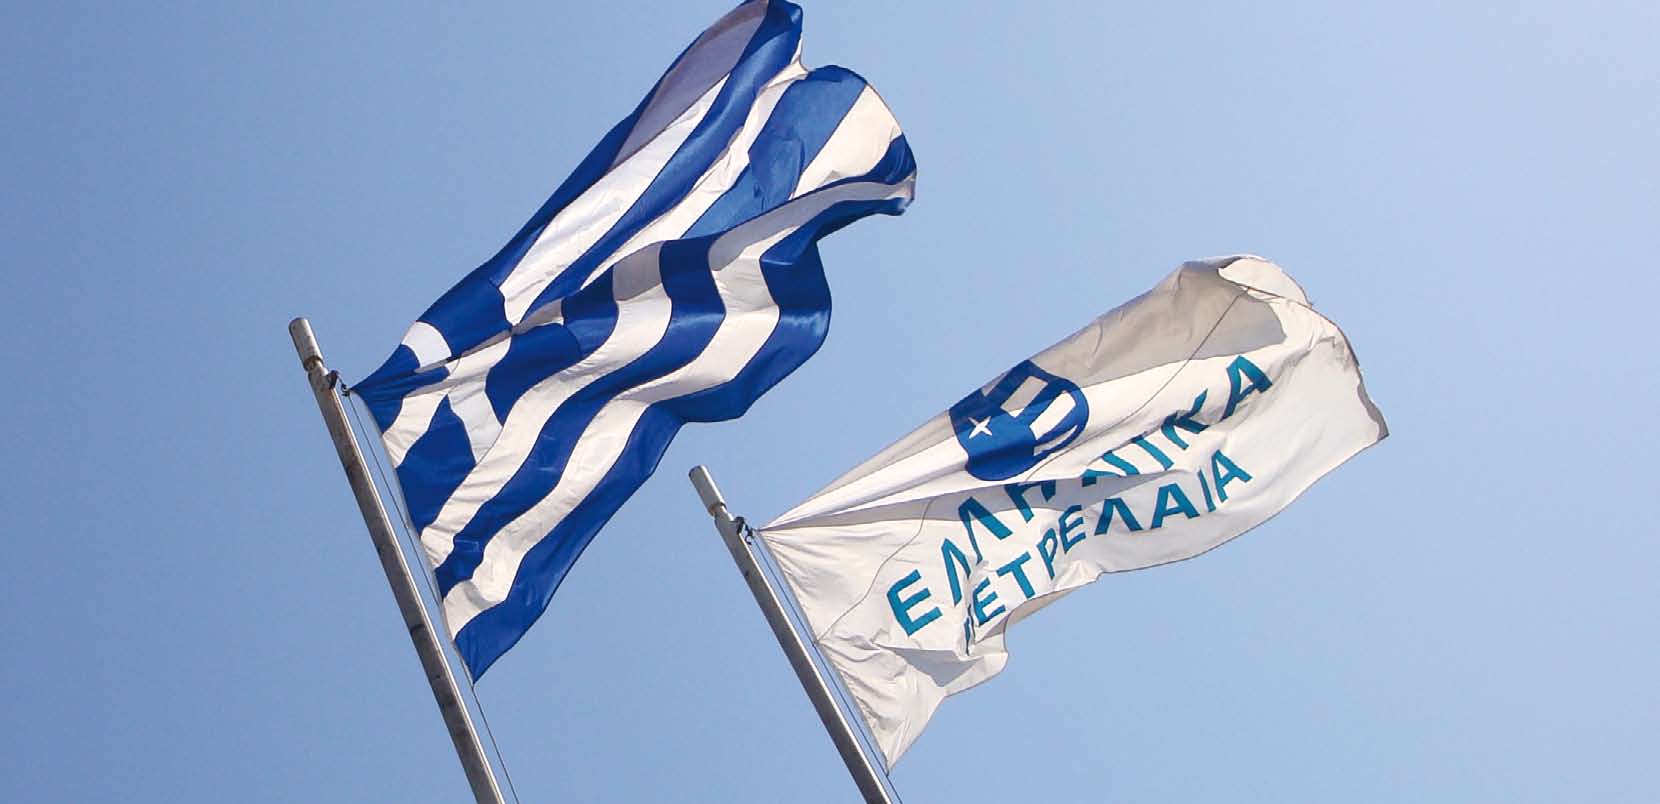 1.1 Ο Όμιλος ΕΛΛΗΝΙΚΑ ΠΕΤΡΕΛΑΙΑ Ο Όμιλος ΕΛΛΗΝΙΚΑ ΠΕΤΡΕΛΑΙΑ είναι ο μεγαλύτερος βιομηχανικός και εμπορικός όμιλος στην Ελλάδα με σύνολο ενεργητικού 5,2 δις, ίδια κεφάλαια (περιλαμβανομένων